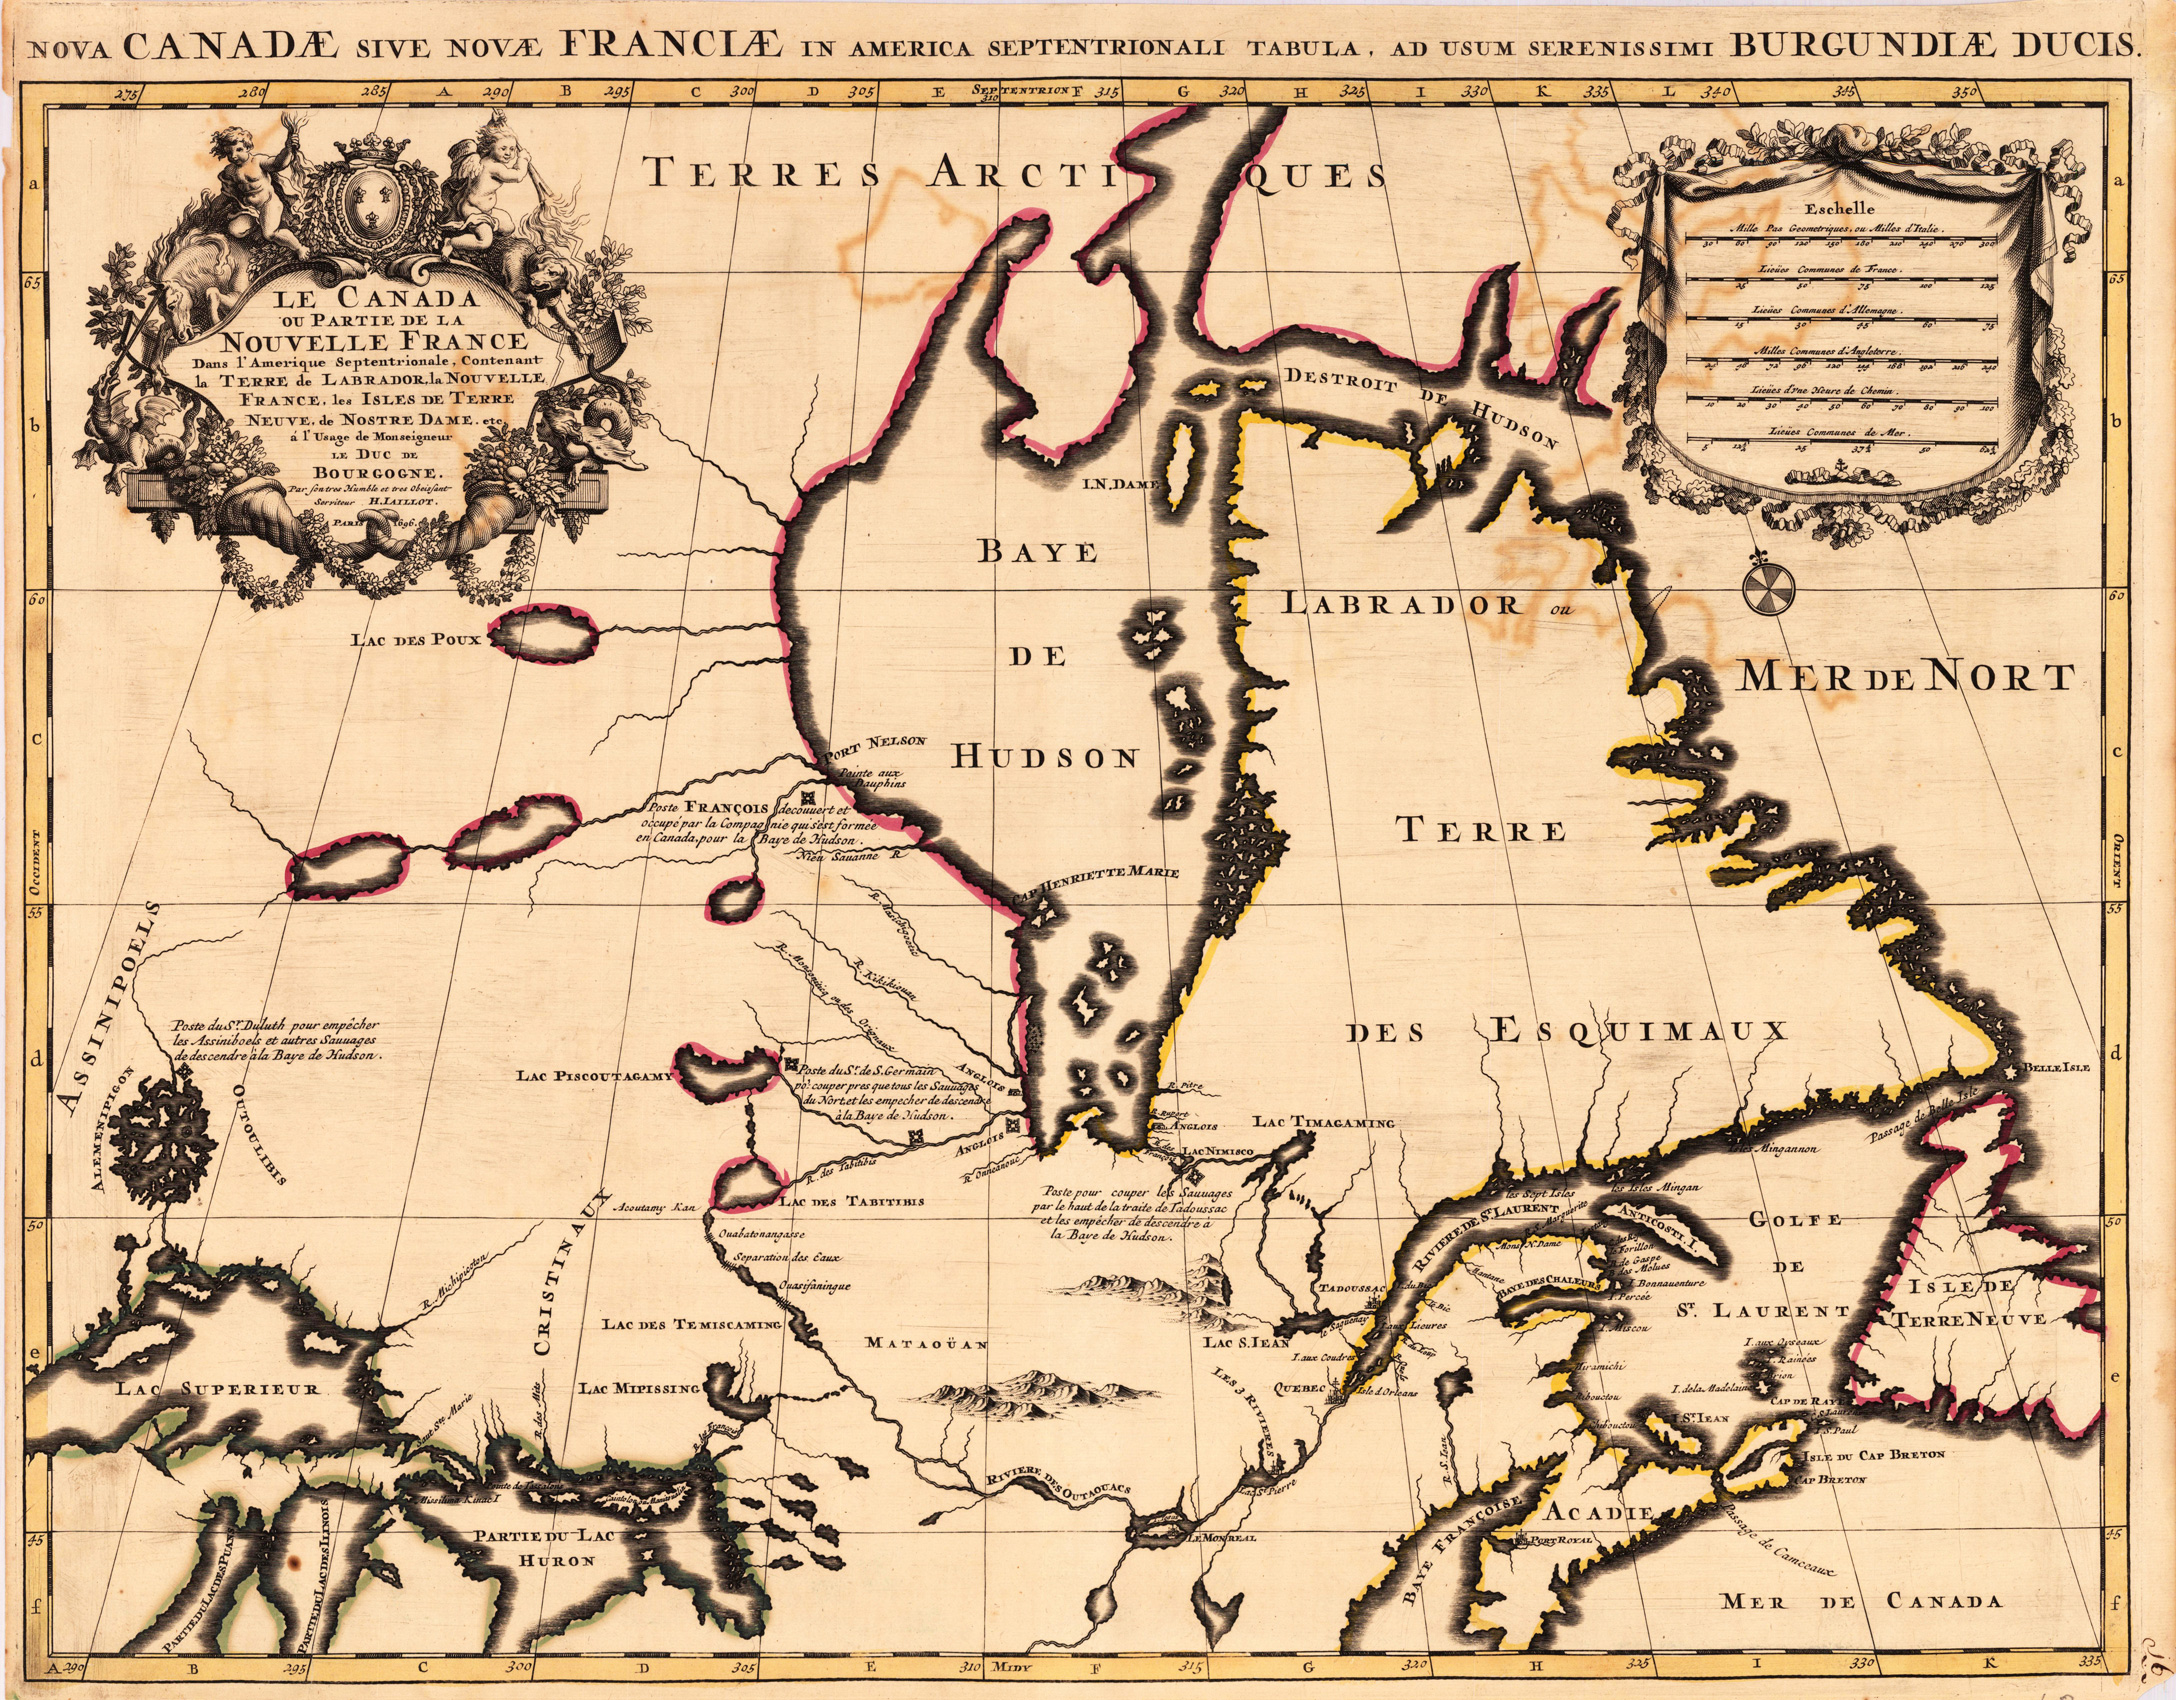 Nova Canadae 1693